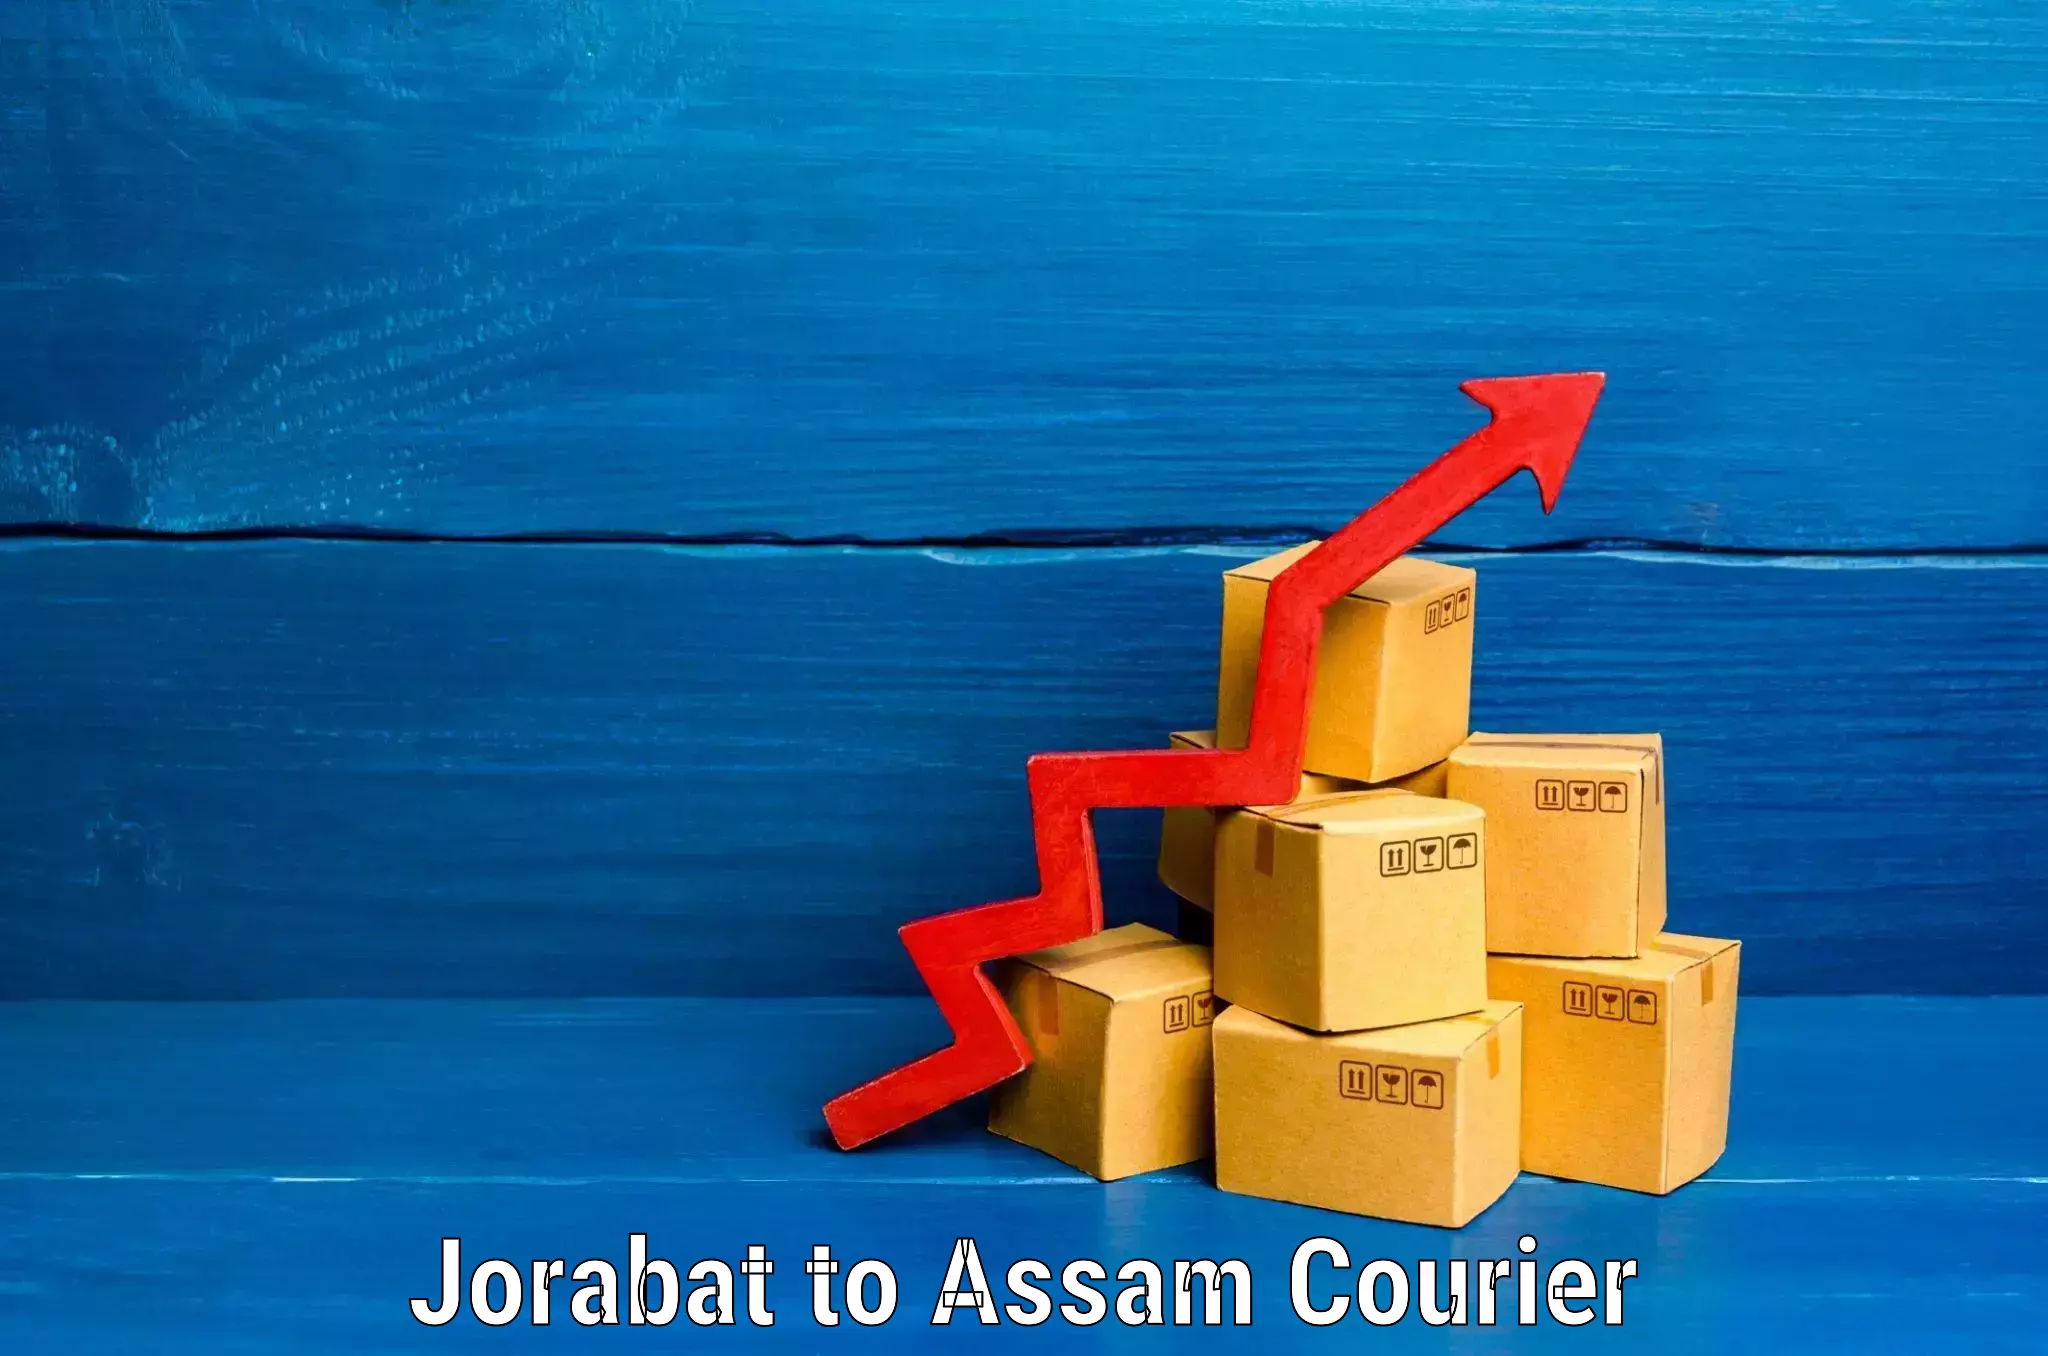 Personalized luggage shipping Jorabat to Lala Assam